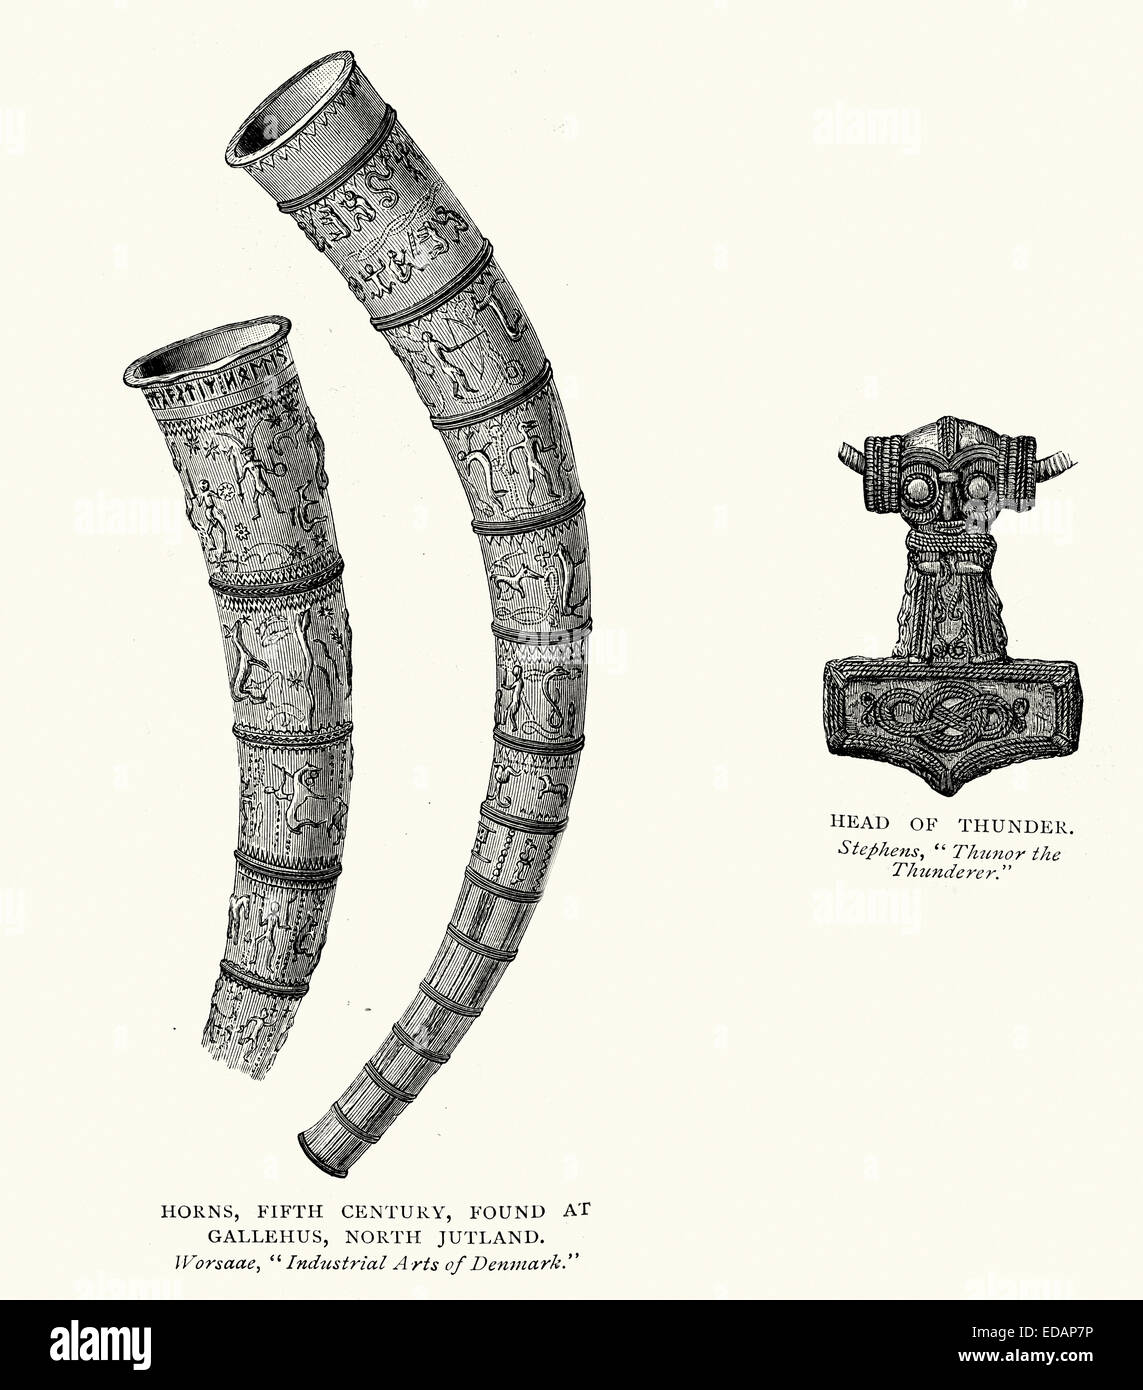 Norse und Viking Artefakte gefunden 5. Jahrhundert Horn Gallehus, Nordjütland und Head of Thor den Donner Stockfoto